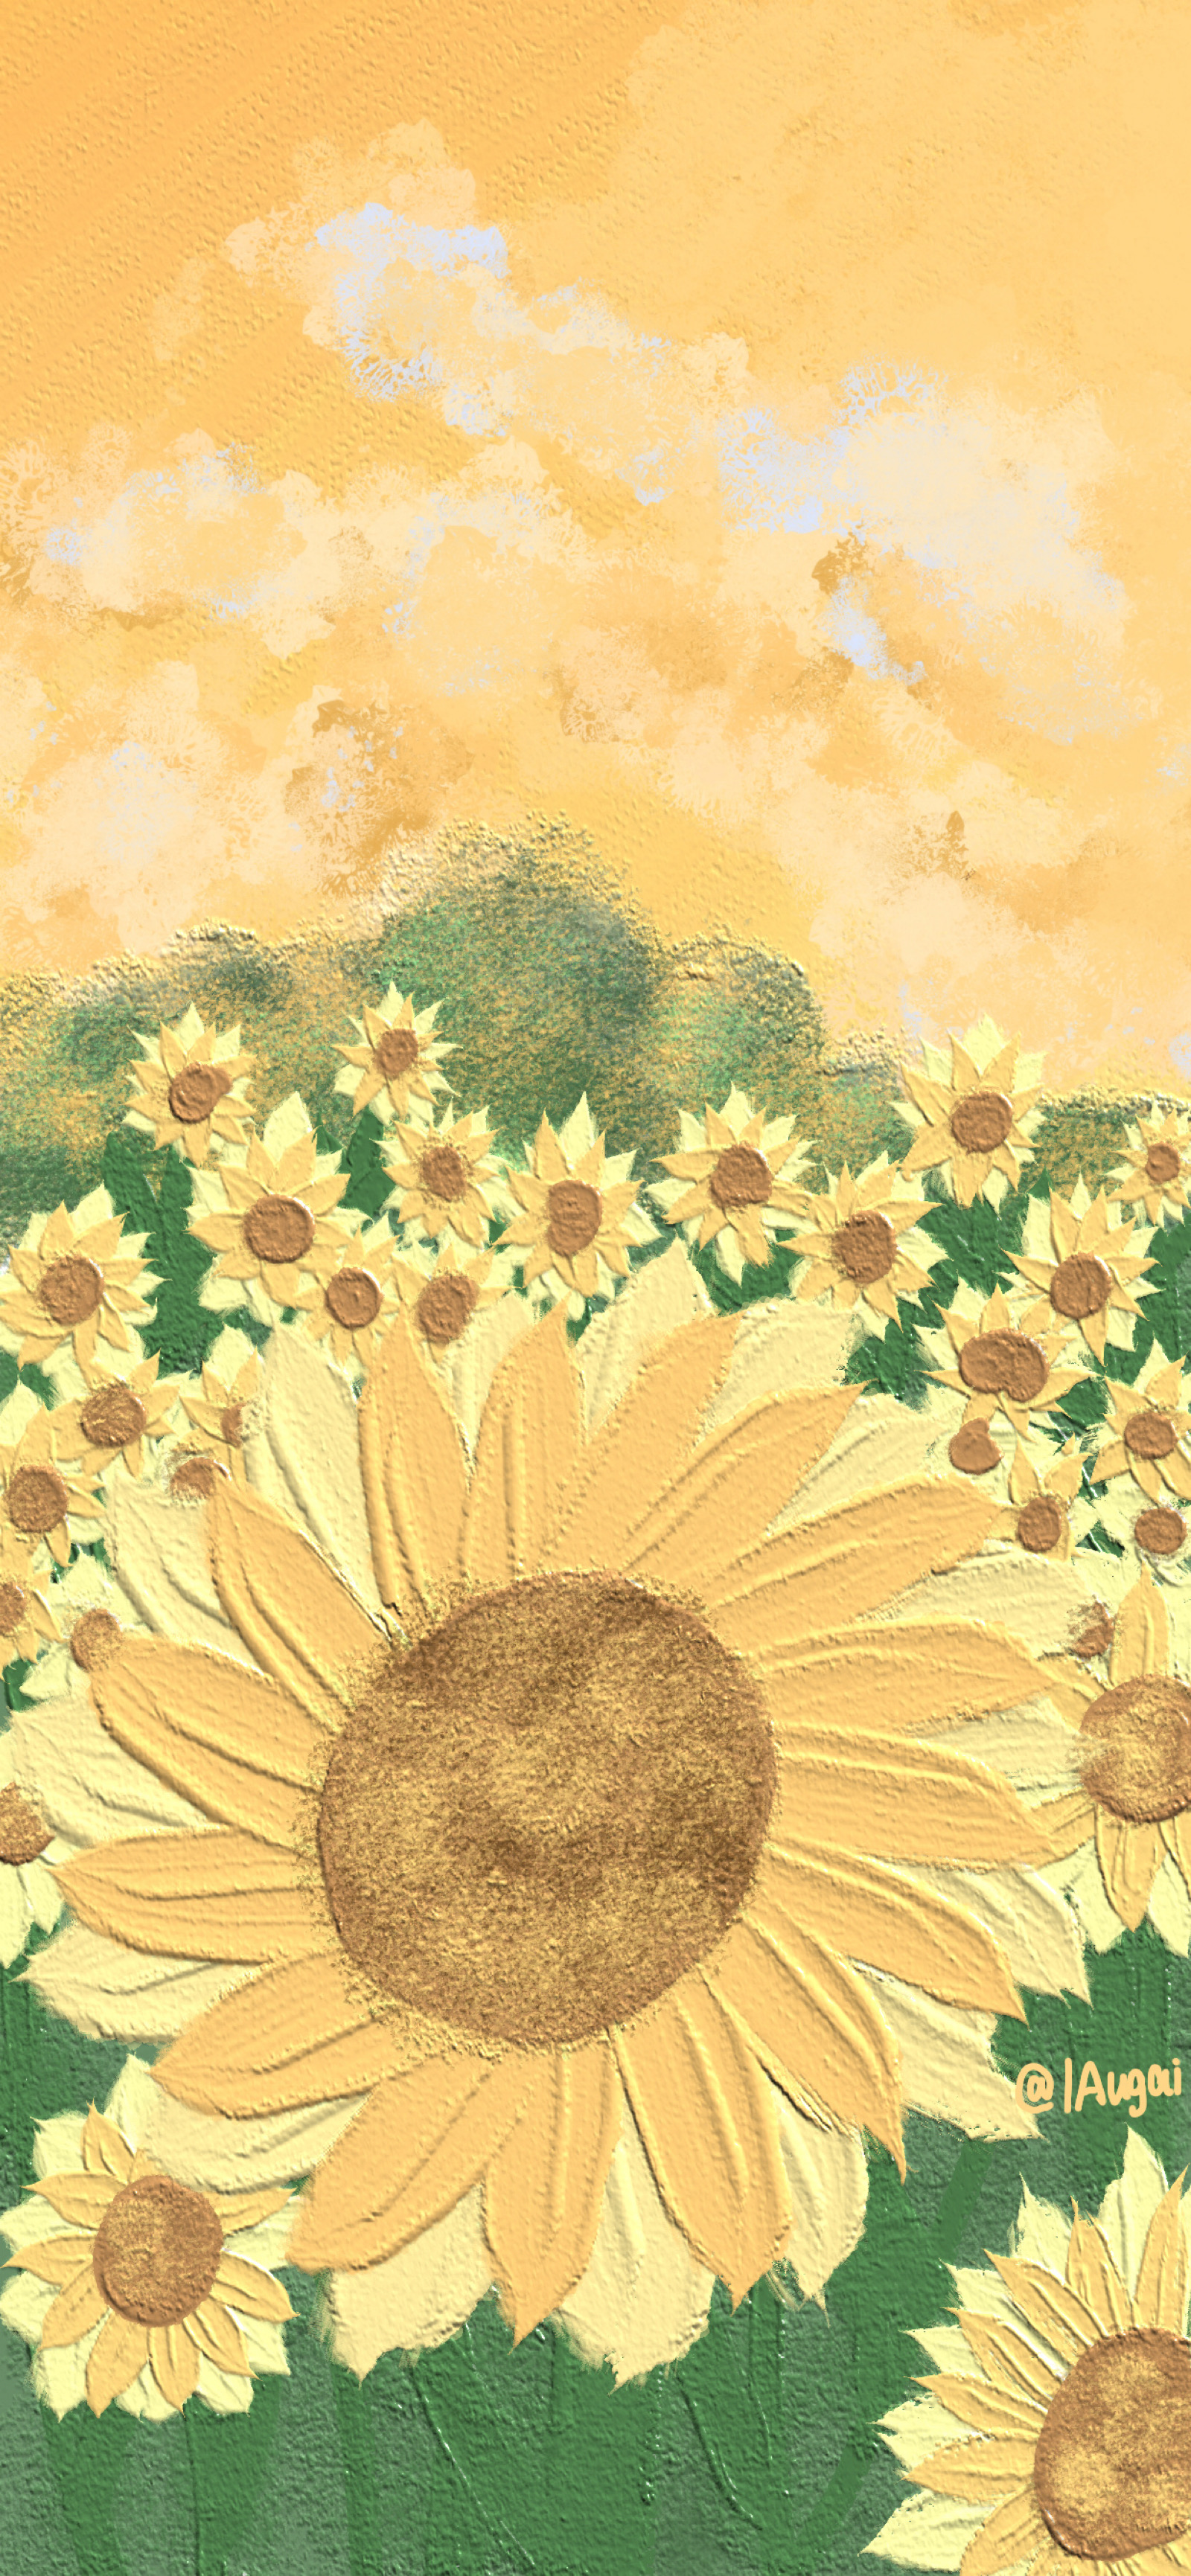 油画壁纸 - 风景花朵